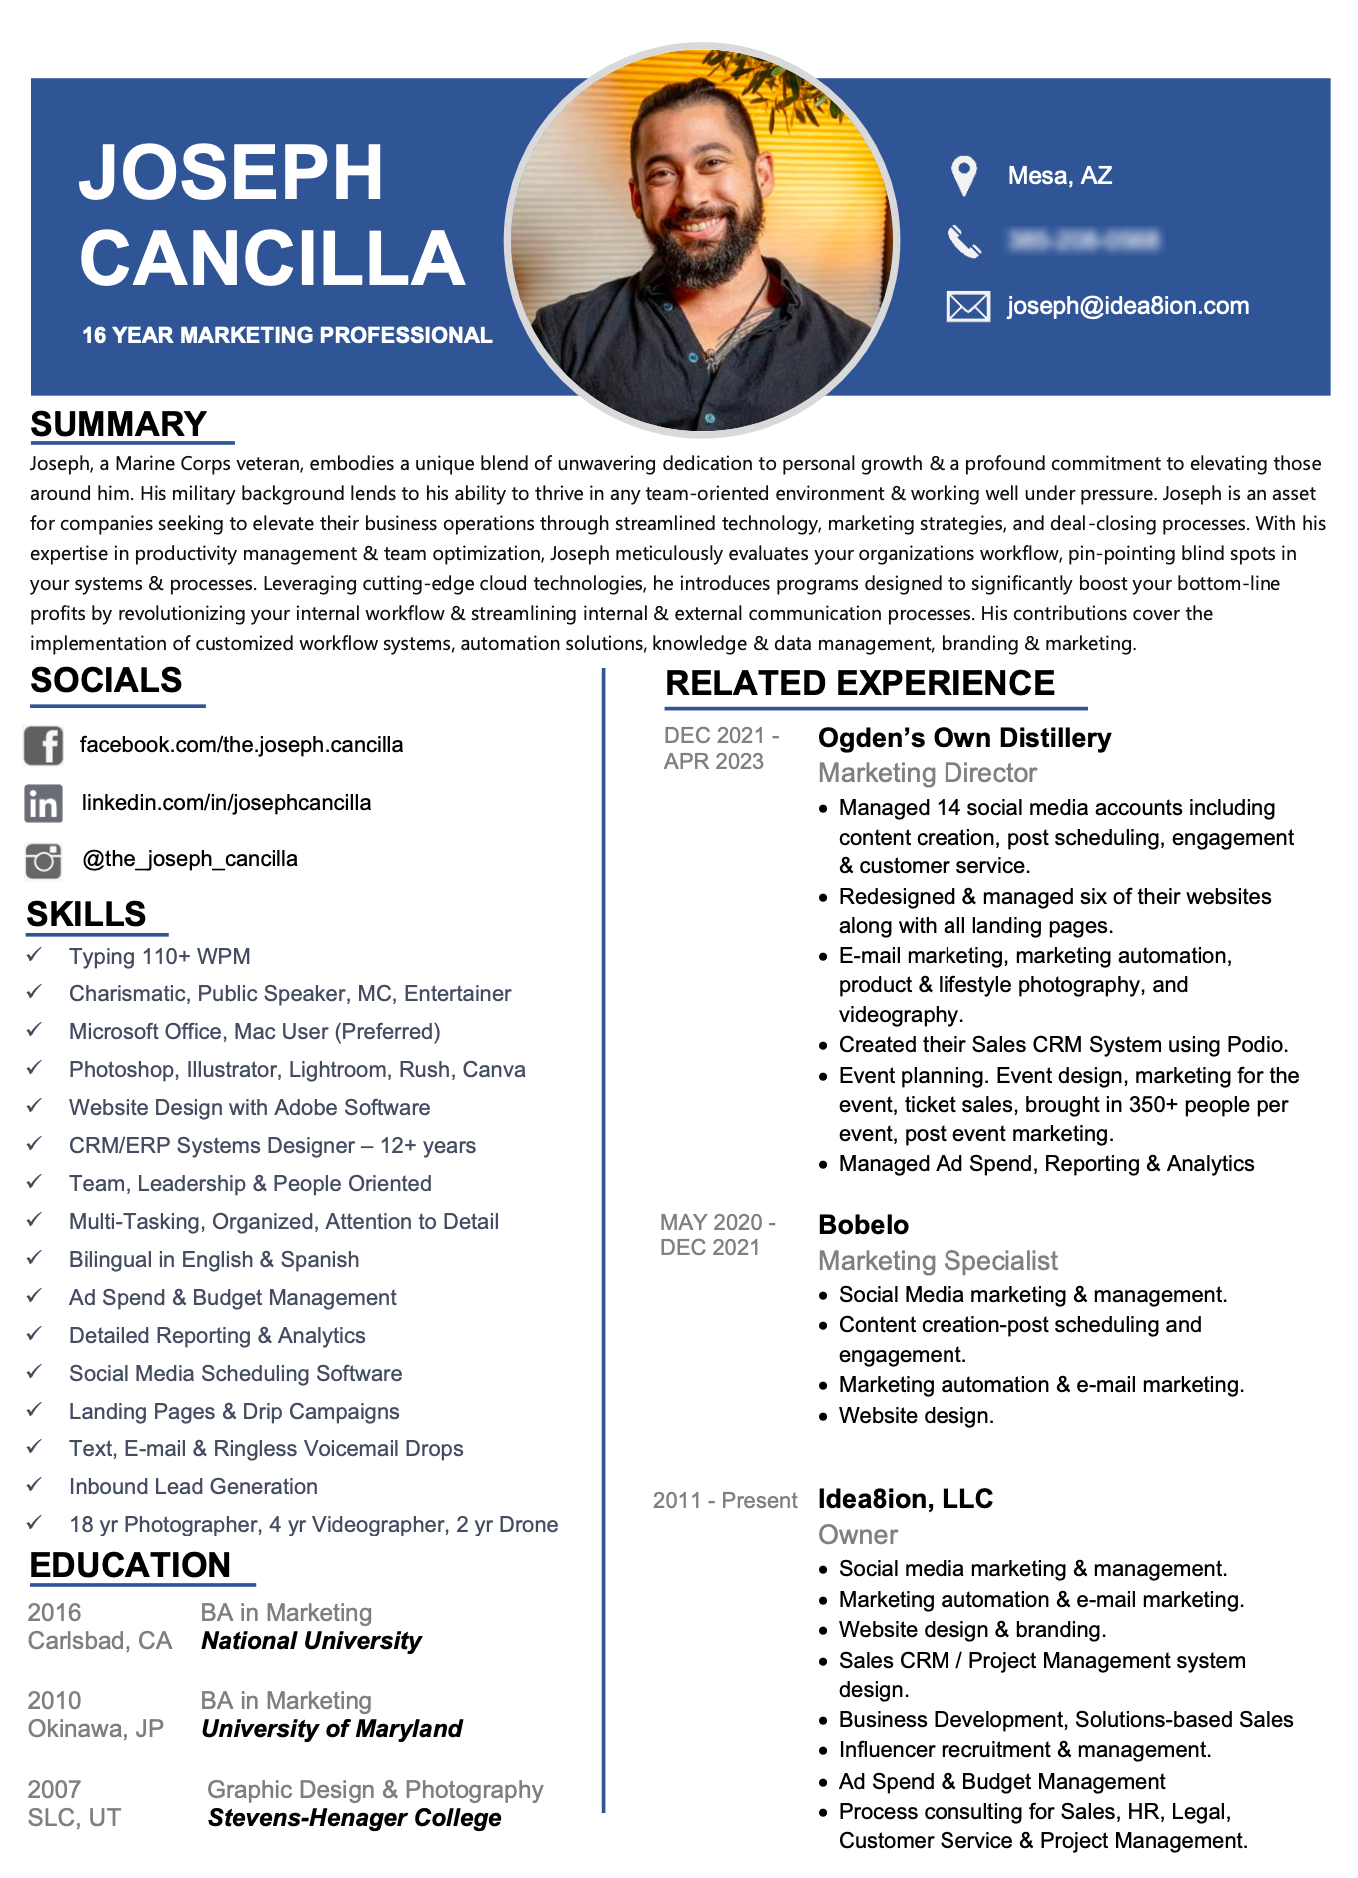 Marketing Resume for Joseph Cancilla